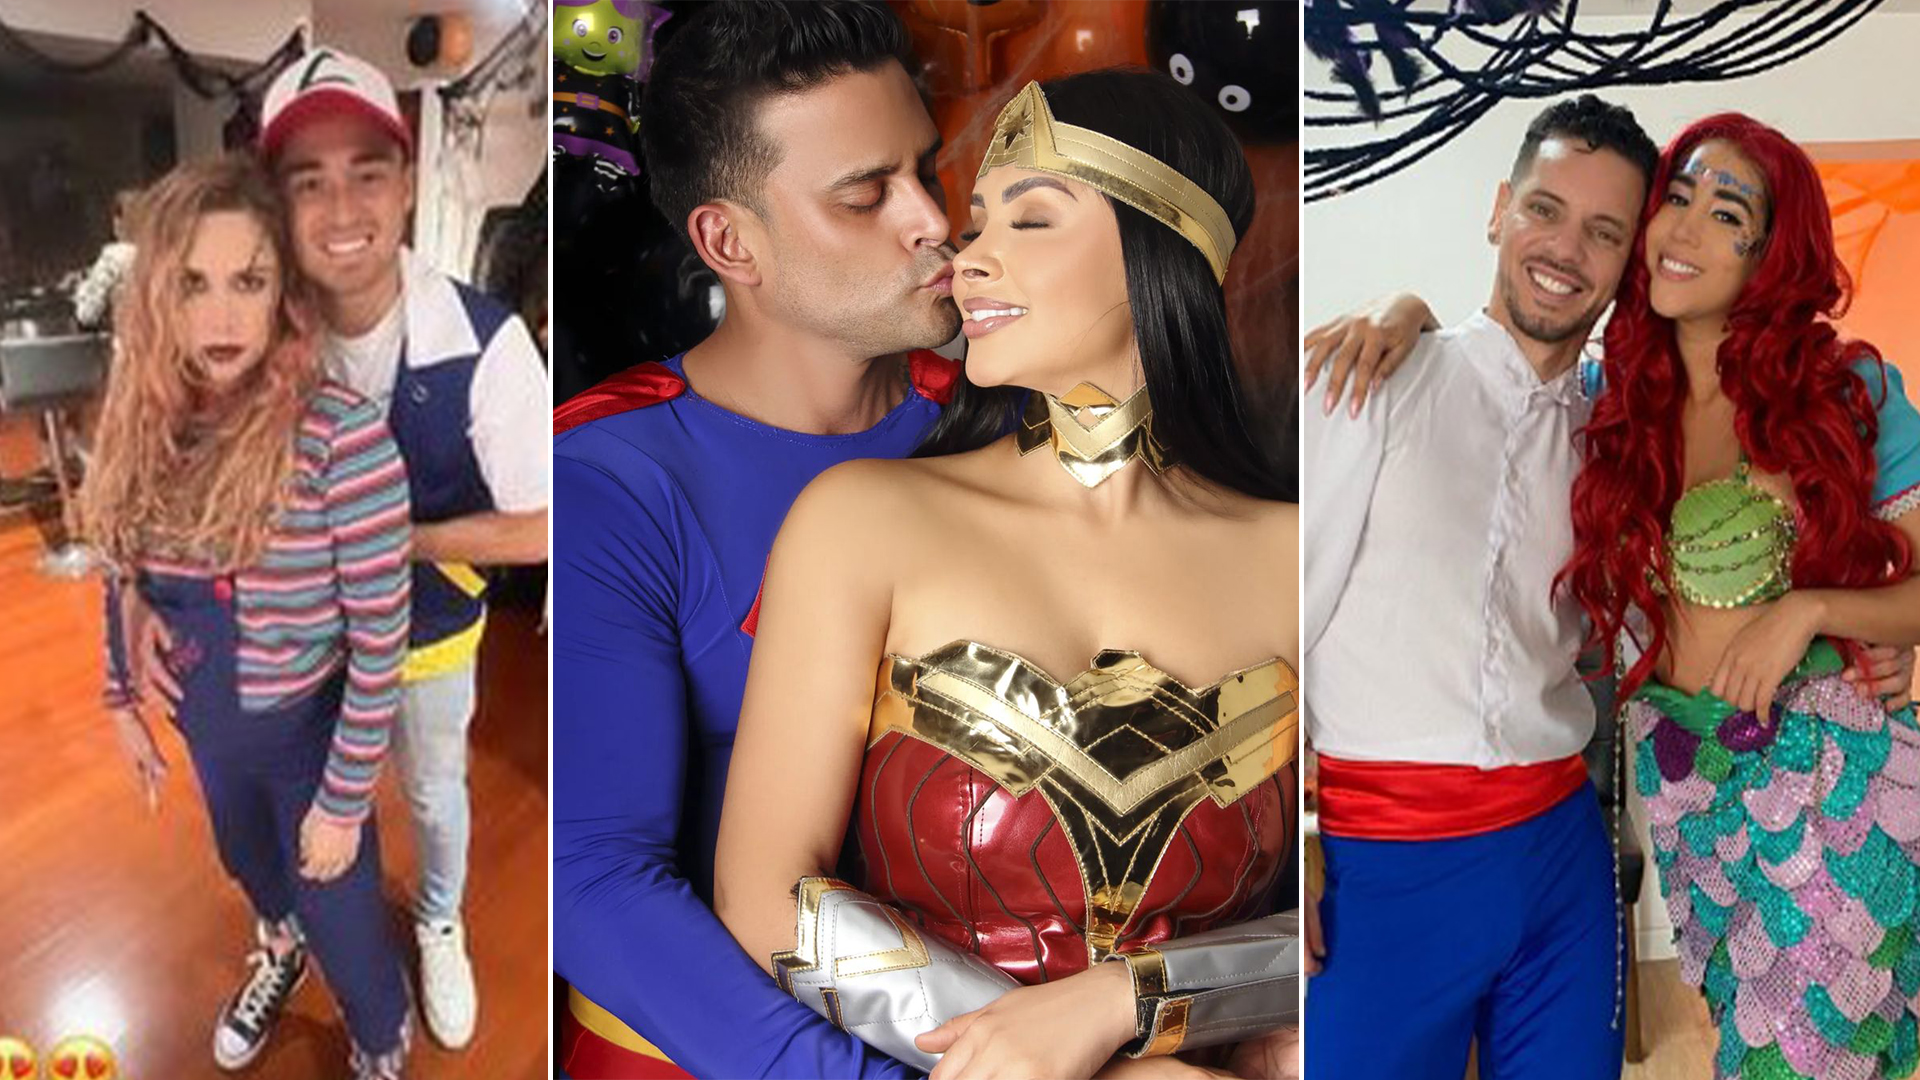 Ale y Rodrigo, Melissa y Anthony y más parejas que lucieron divertidos  disfraces en Halloween - Infobae